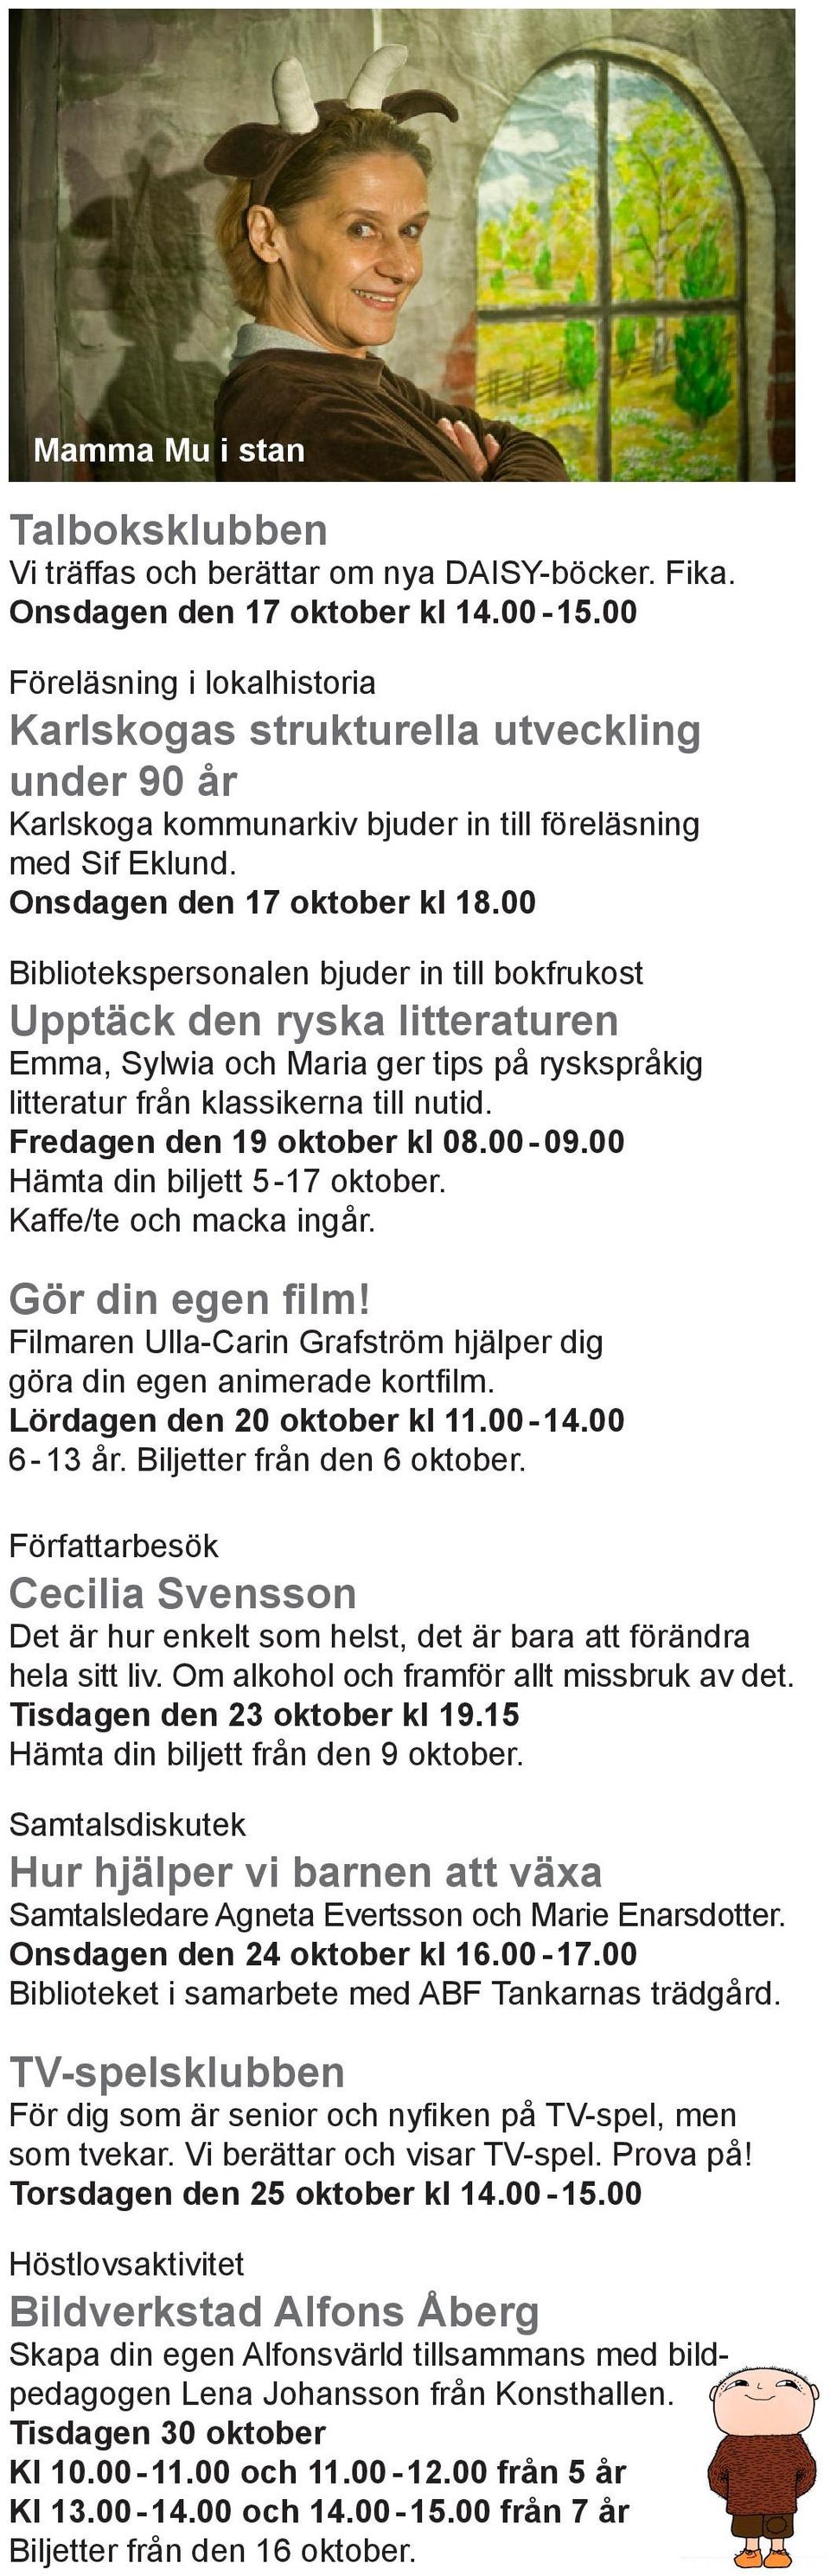 Kaffe/te och macka ingår. Gör din egen film! Filmaren Ulla-Carin Grafström hjälper dig göra din egen animerade kortfilm. Lördagen den 20 oktober kl 11.00-14.00 6-13 år. Biljetter från den 6 oktober.